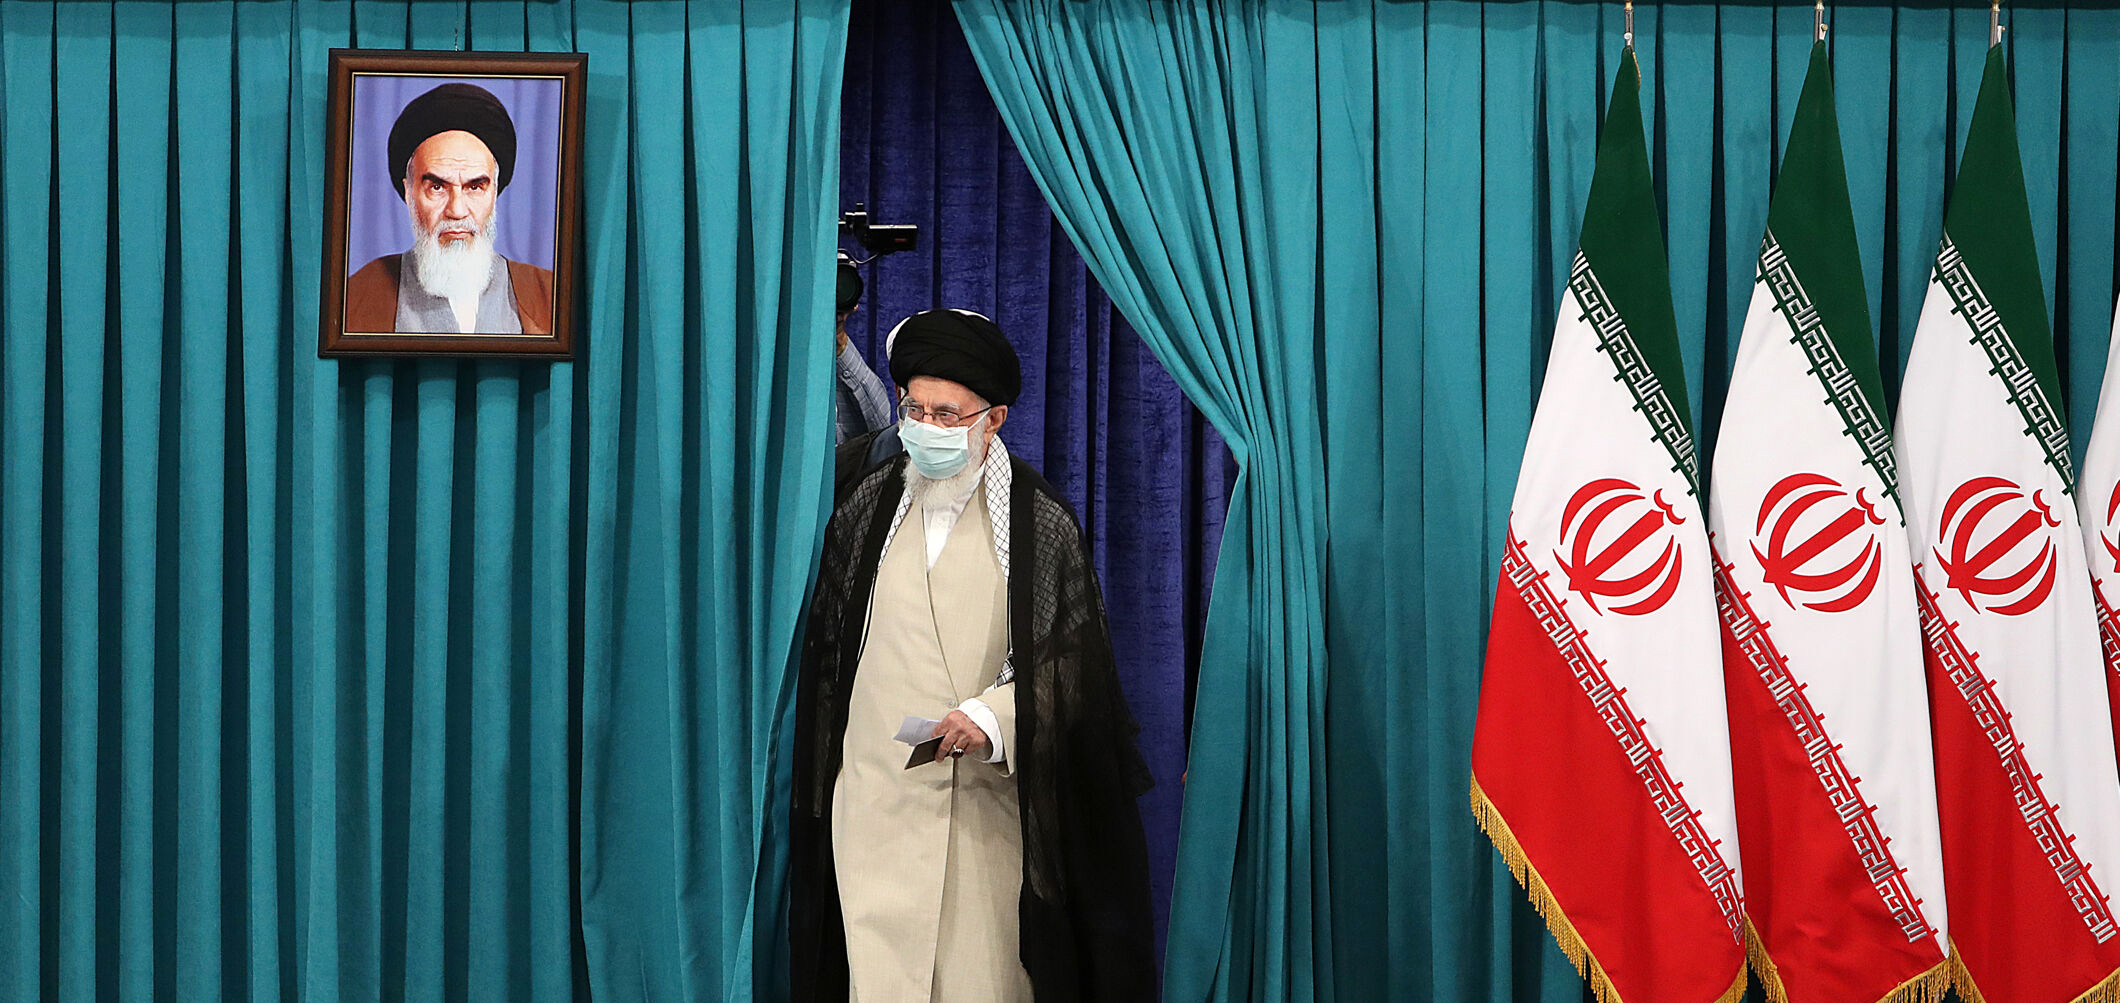 İran nasıl yönetiliyor? İşte merak edilen sorunun cevabı